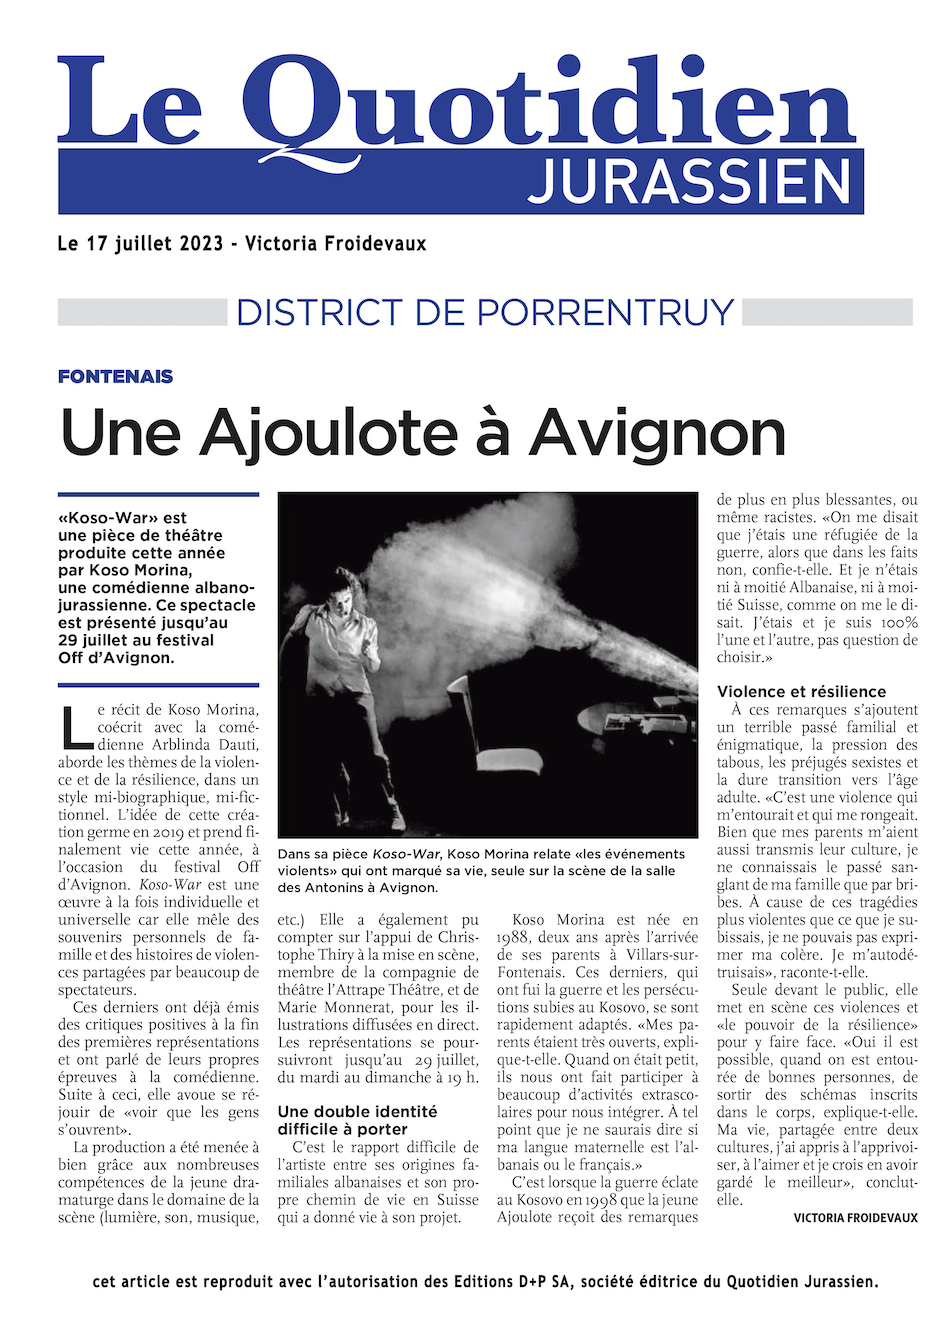 Article de presse Le Quotidien Jurassien 17 juillet 2023